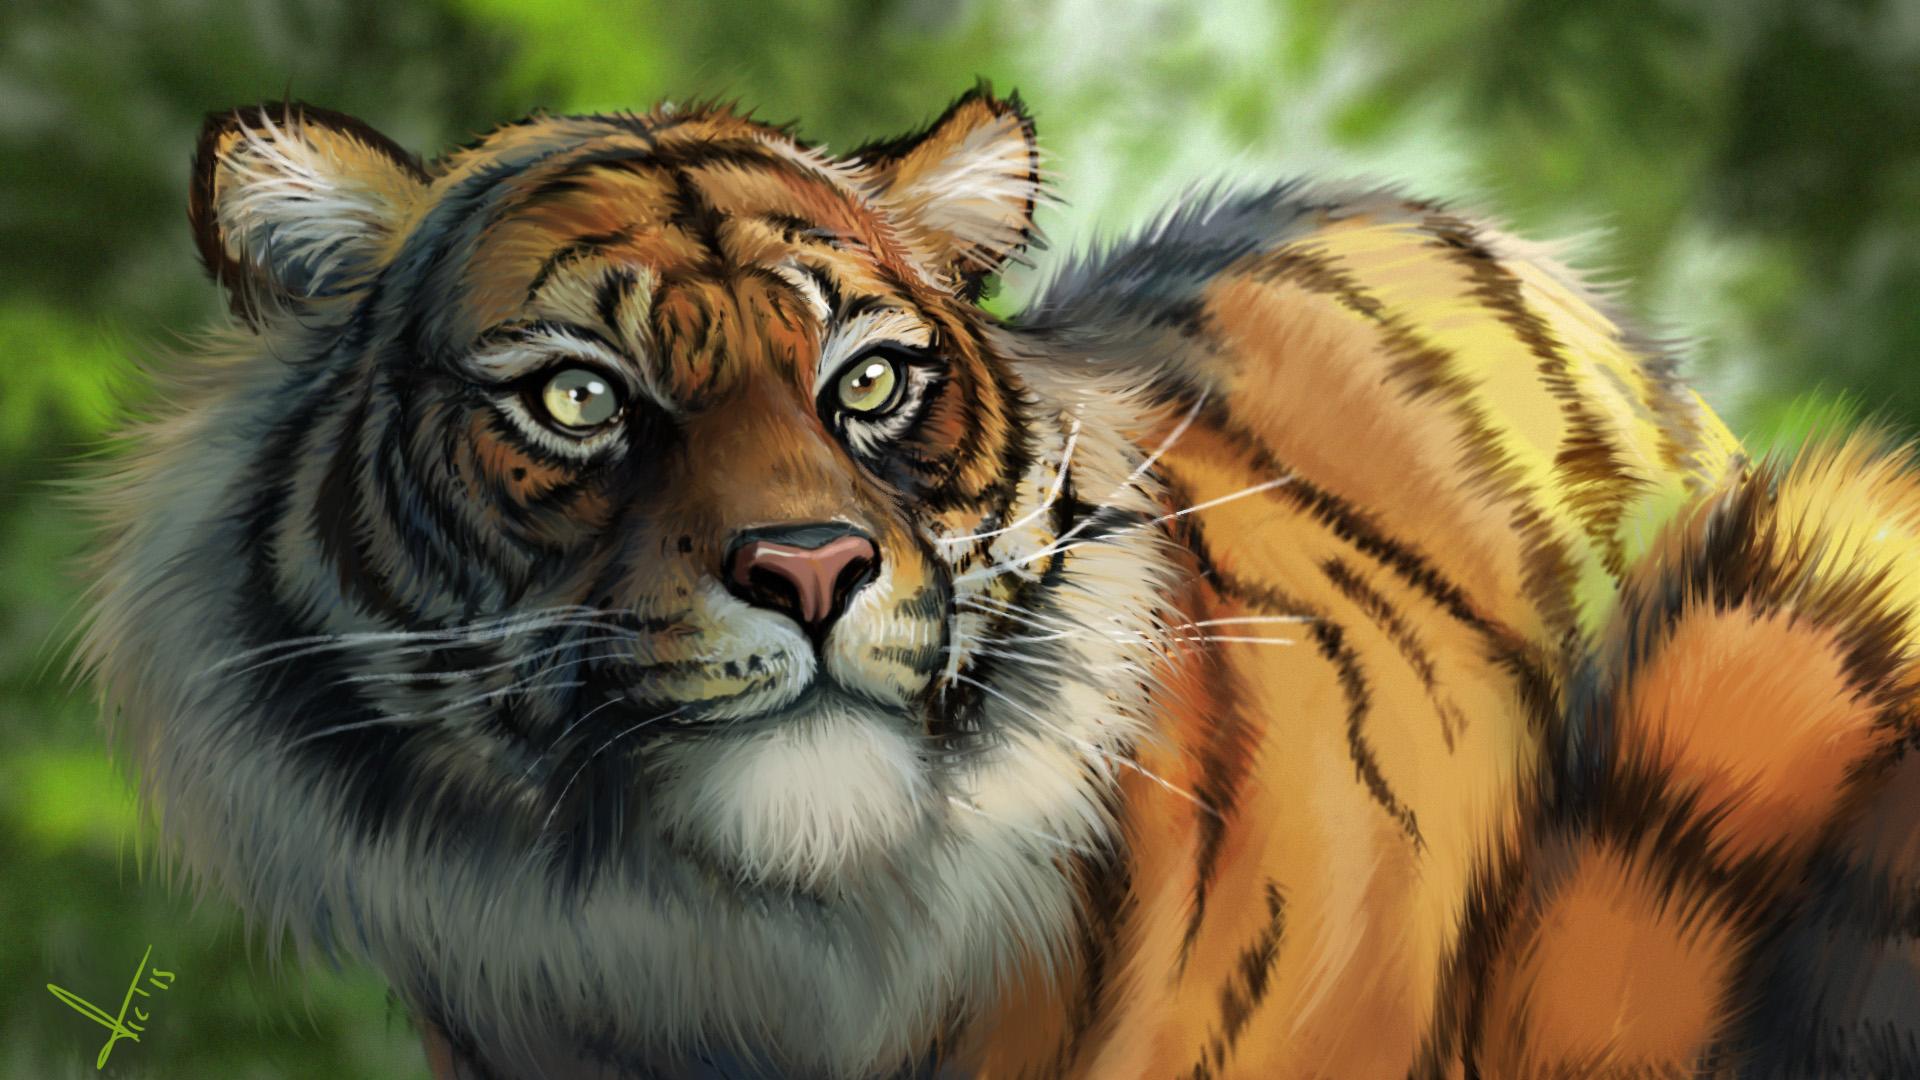 Tiger Digital Artwork, HD Artist, 4k Wallpaper, Image